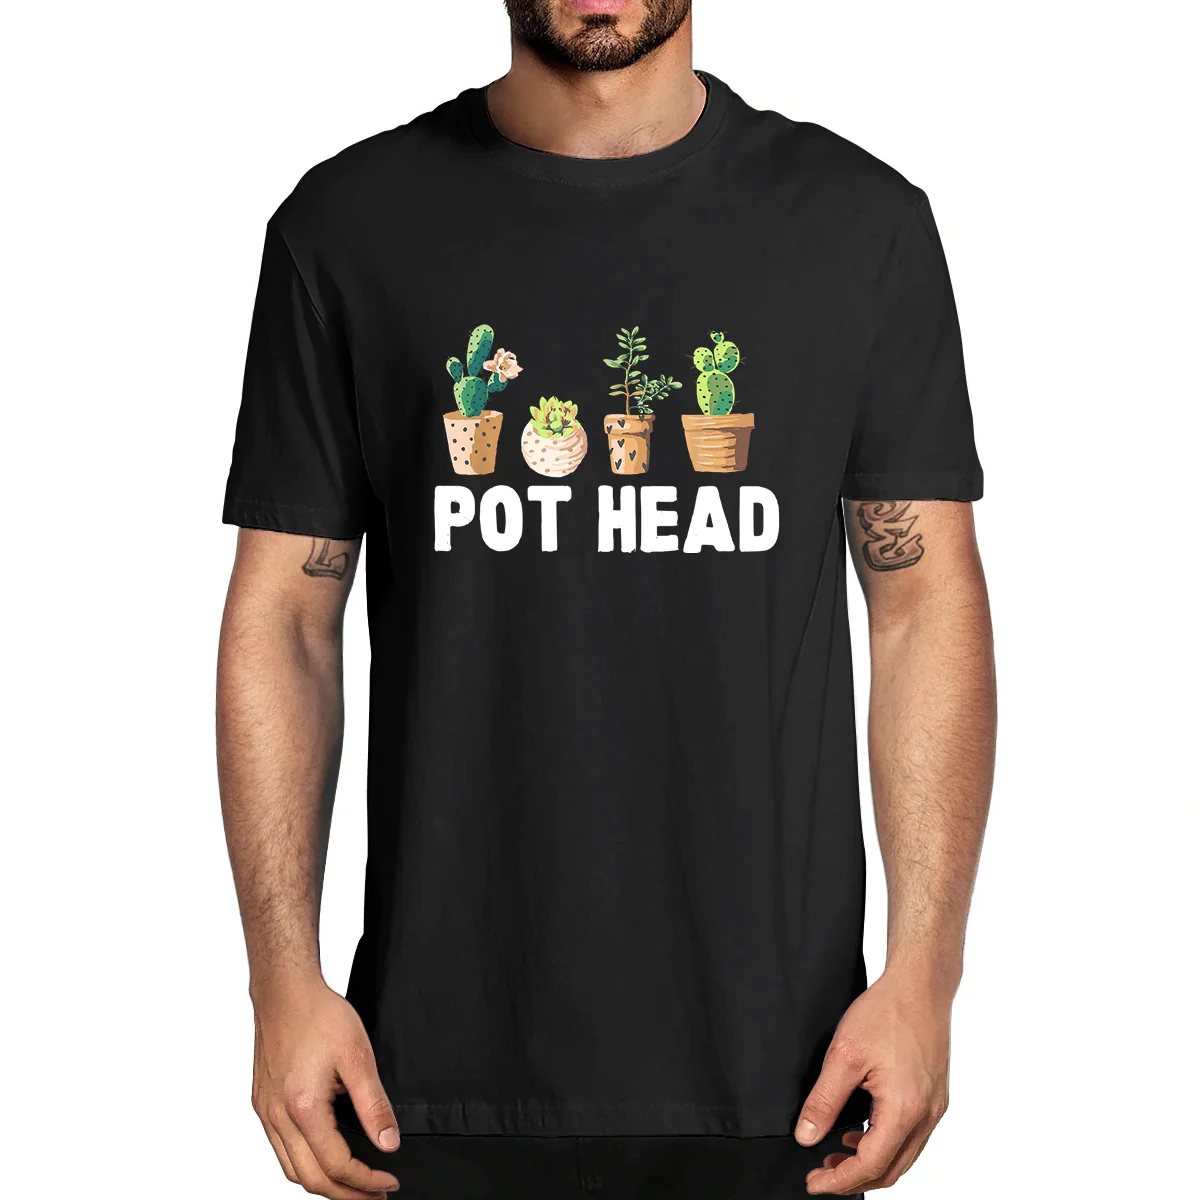 

Смешная забавная Мужская футболка из 100% хлопка с изображением горшка сада, суккулента, сада, новинка, унисекс, смешная уличная одежда с юмором, Женский Топ